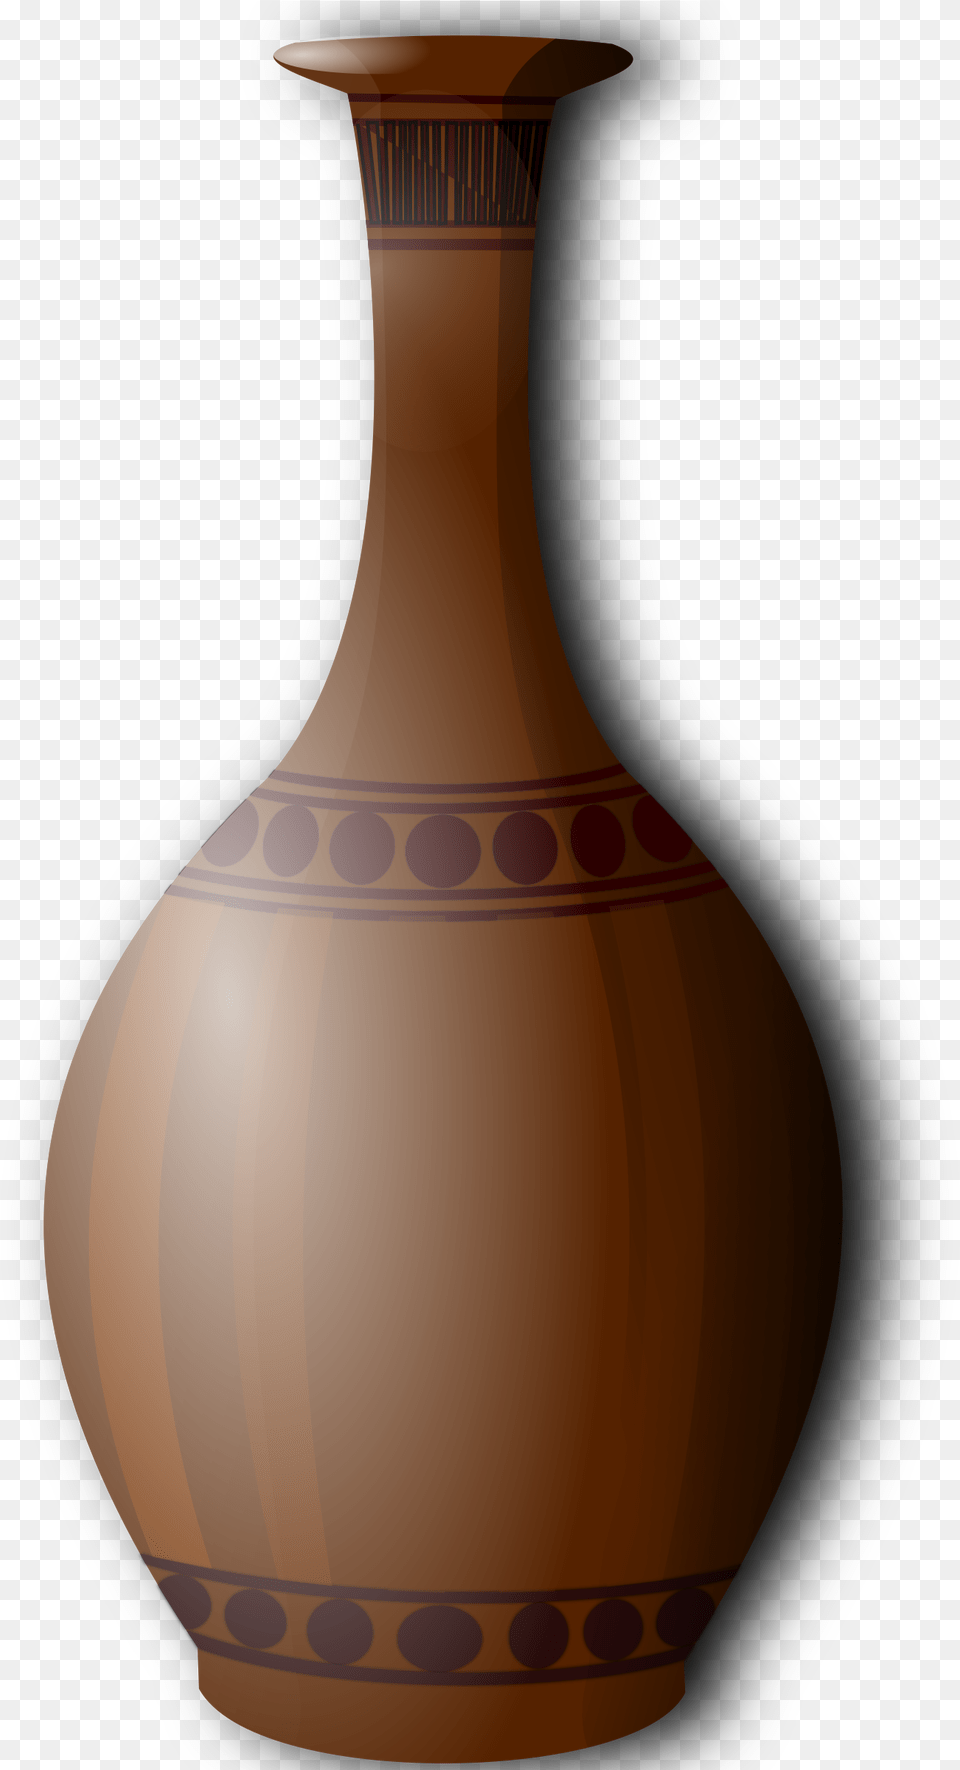 Vase Vase Brown, Jar, Pottery, Ammunition, Grenade Free Transparent Png